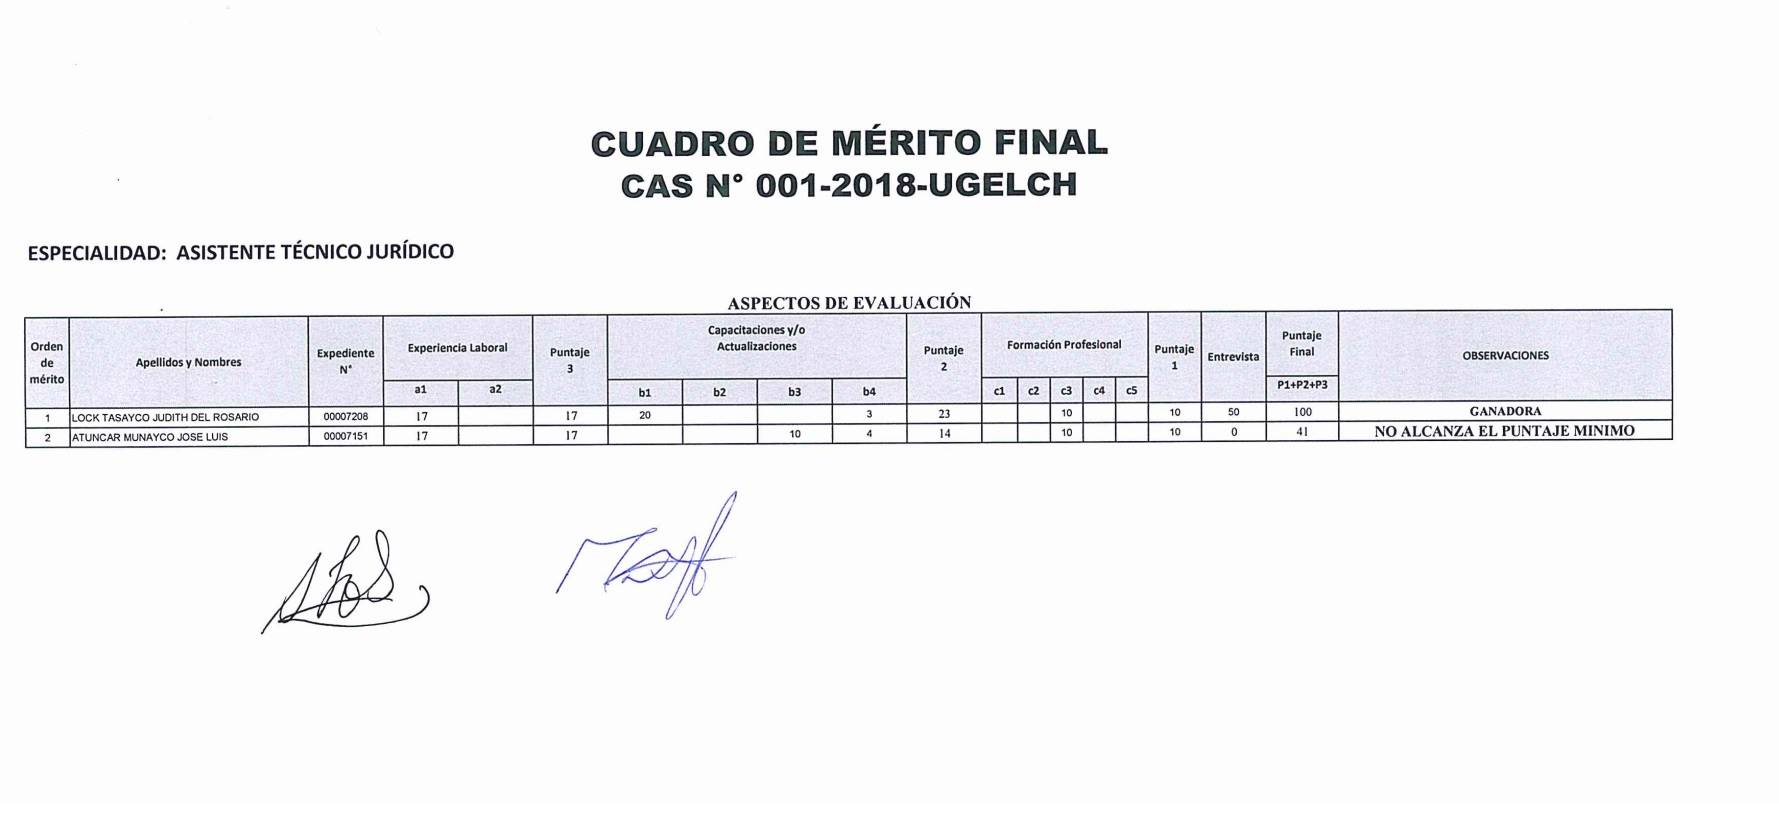 CUADRO DE MÉRITO FINAL - CAS N° 001-2018